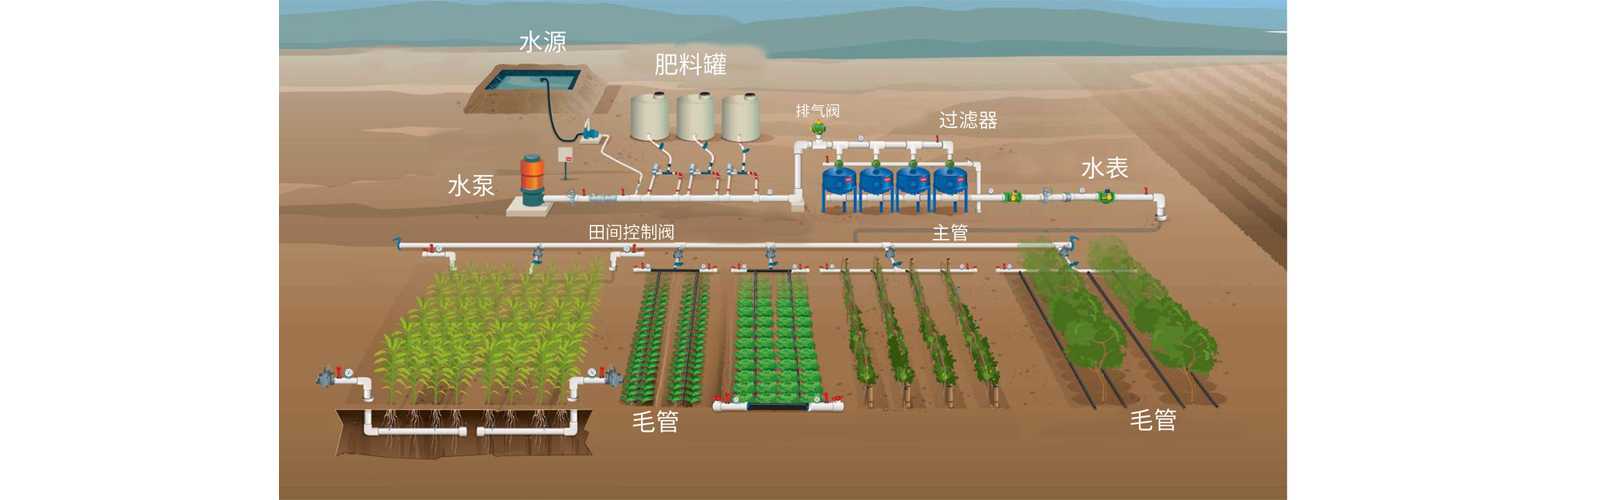 广西捷佳润科技股份有限公司  灌溉科技 智能水肥 灌溉设备 企业会员